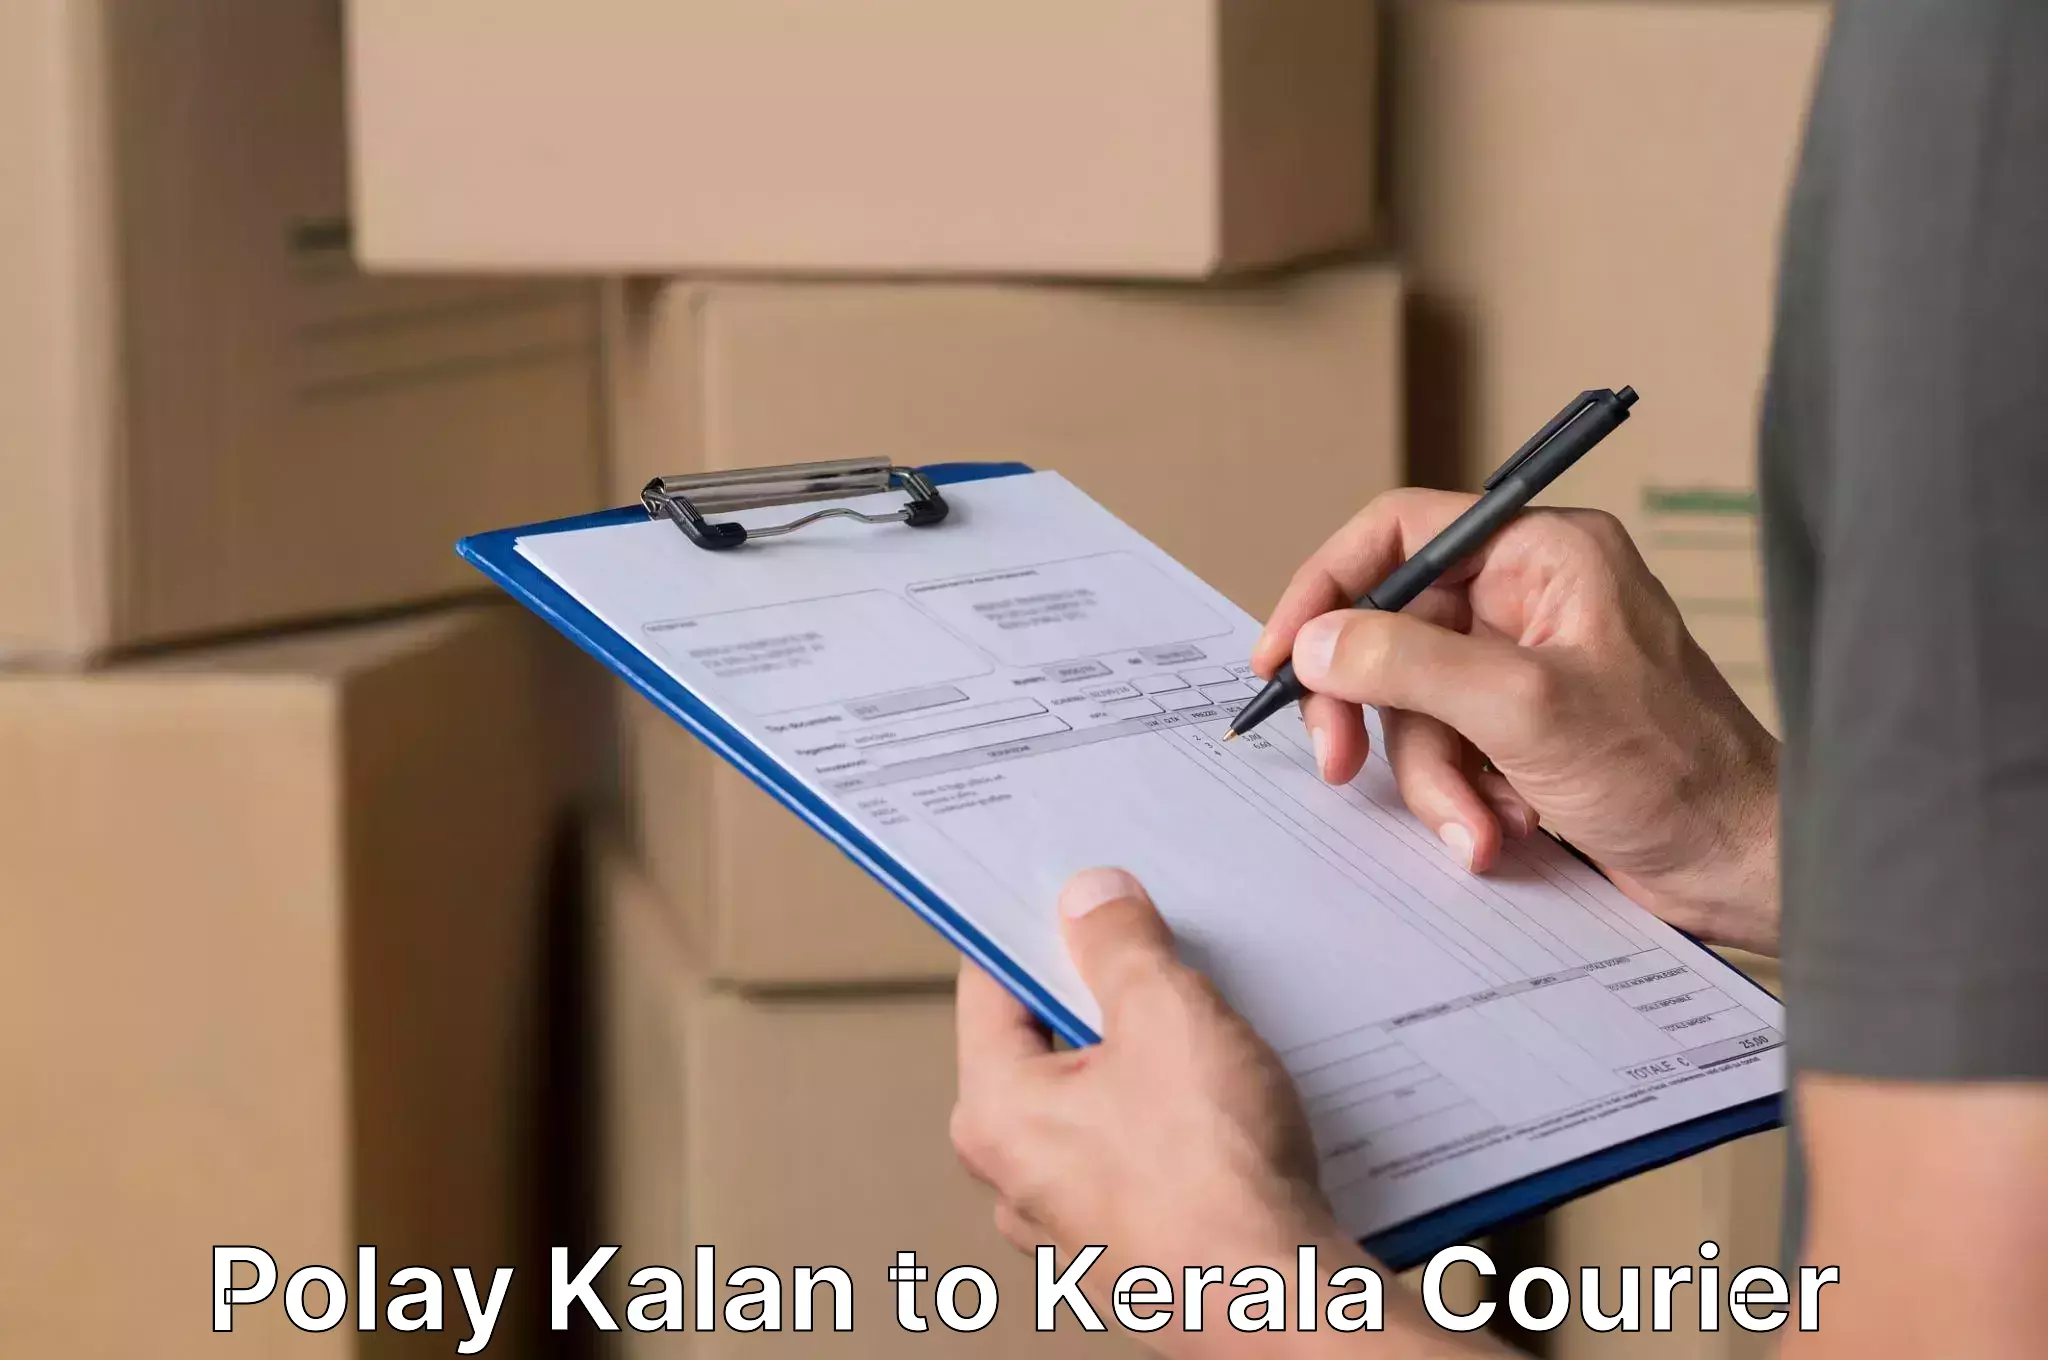 Furniture transport experts Polay Kalan to Kerala